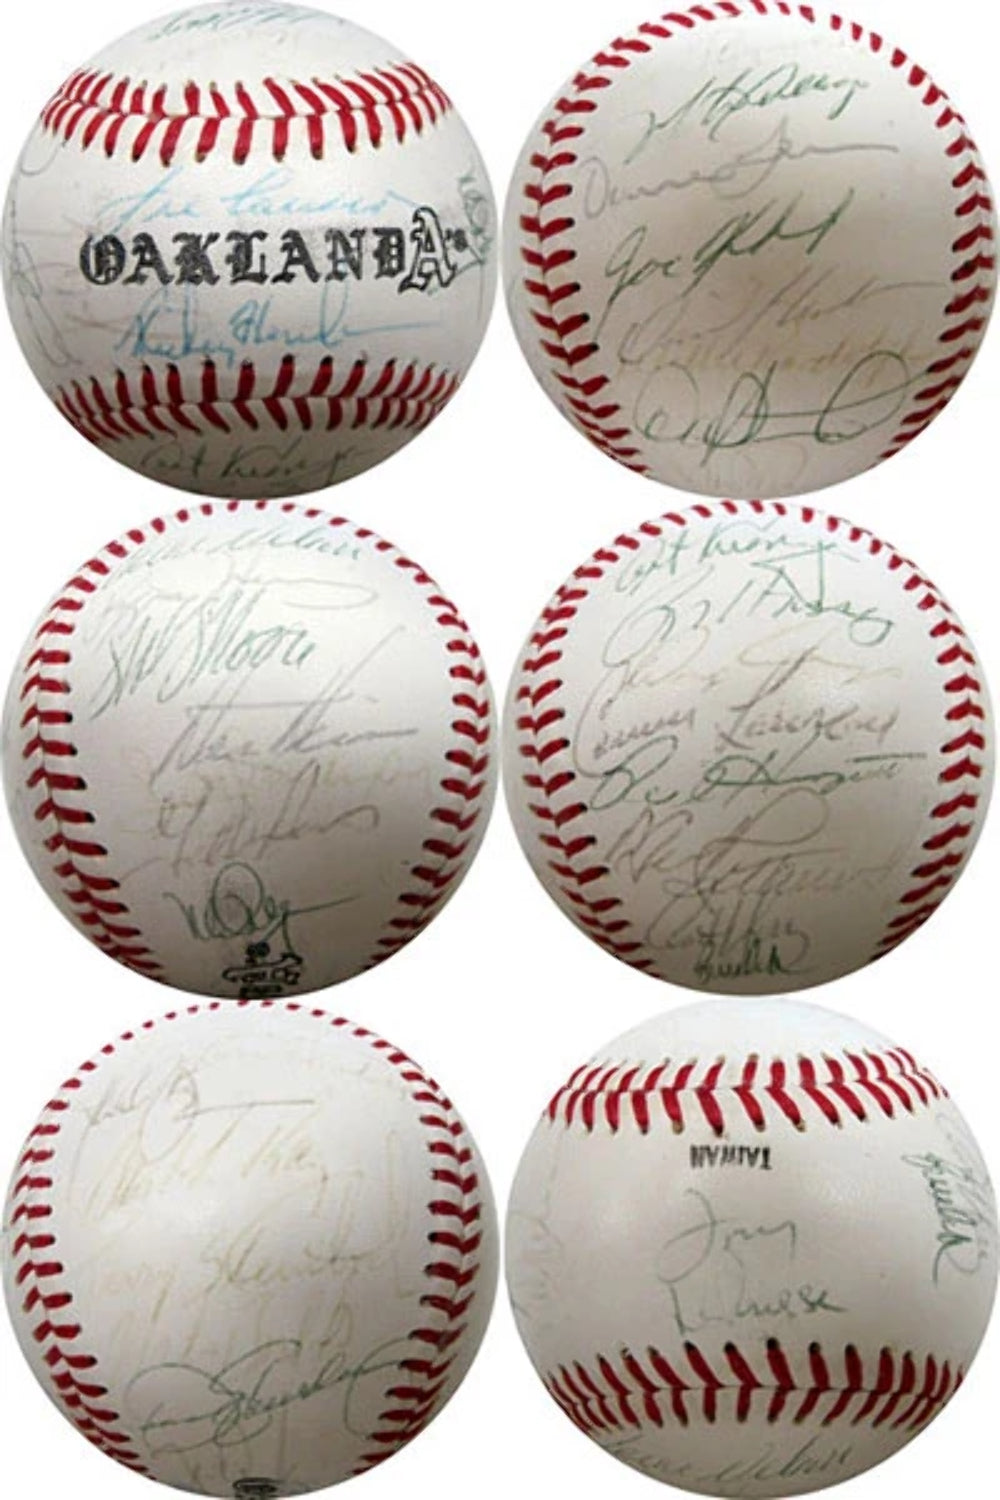 1990 Oakland Athletics Autographed / Signed Baseball Image 1